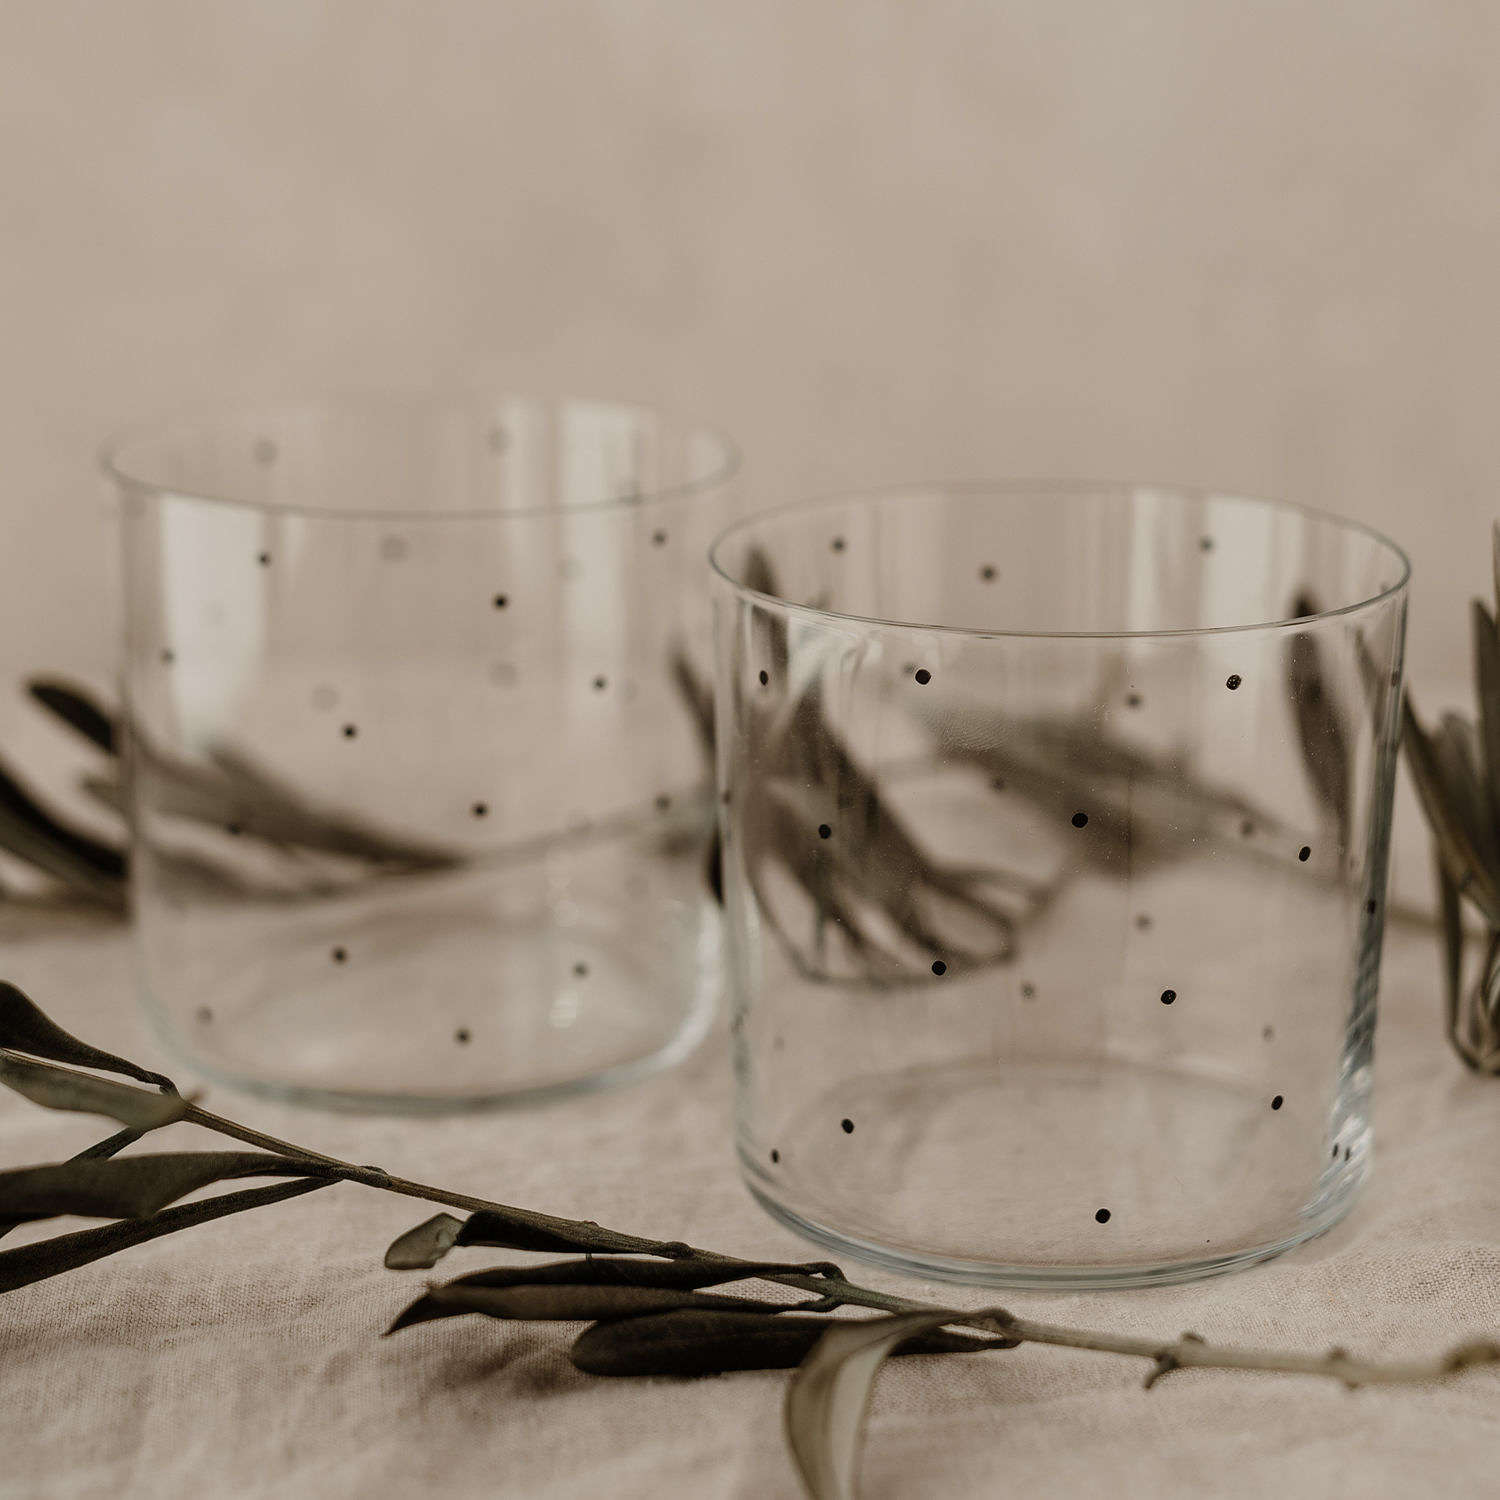 Black dot design drinking glasses - set of 2